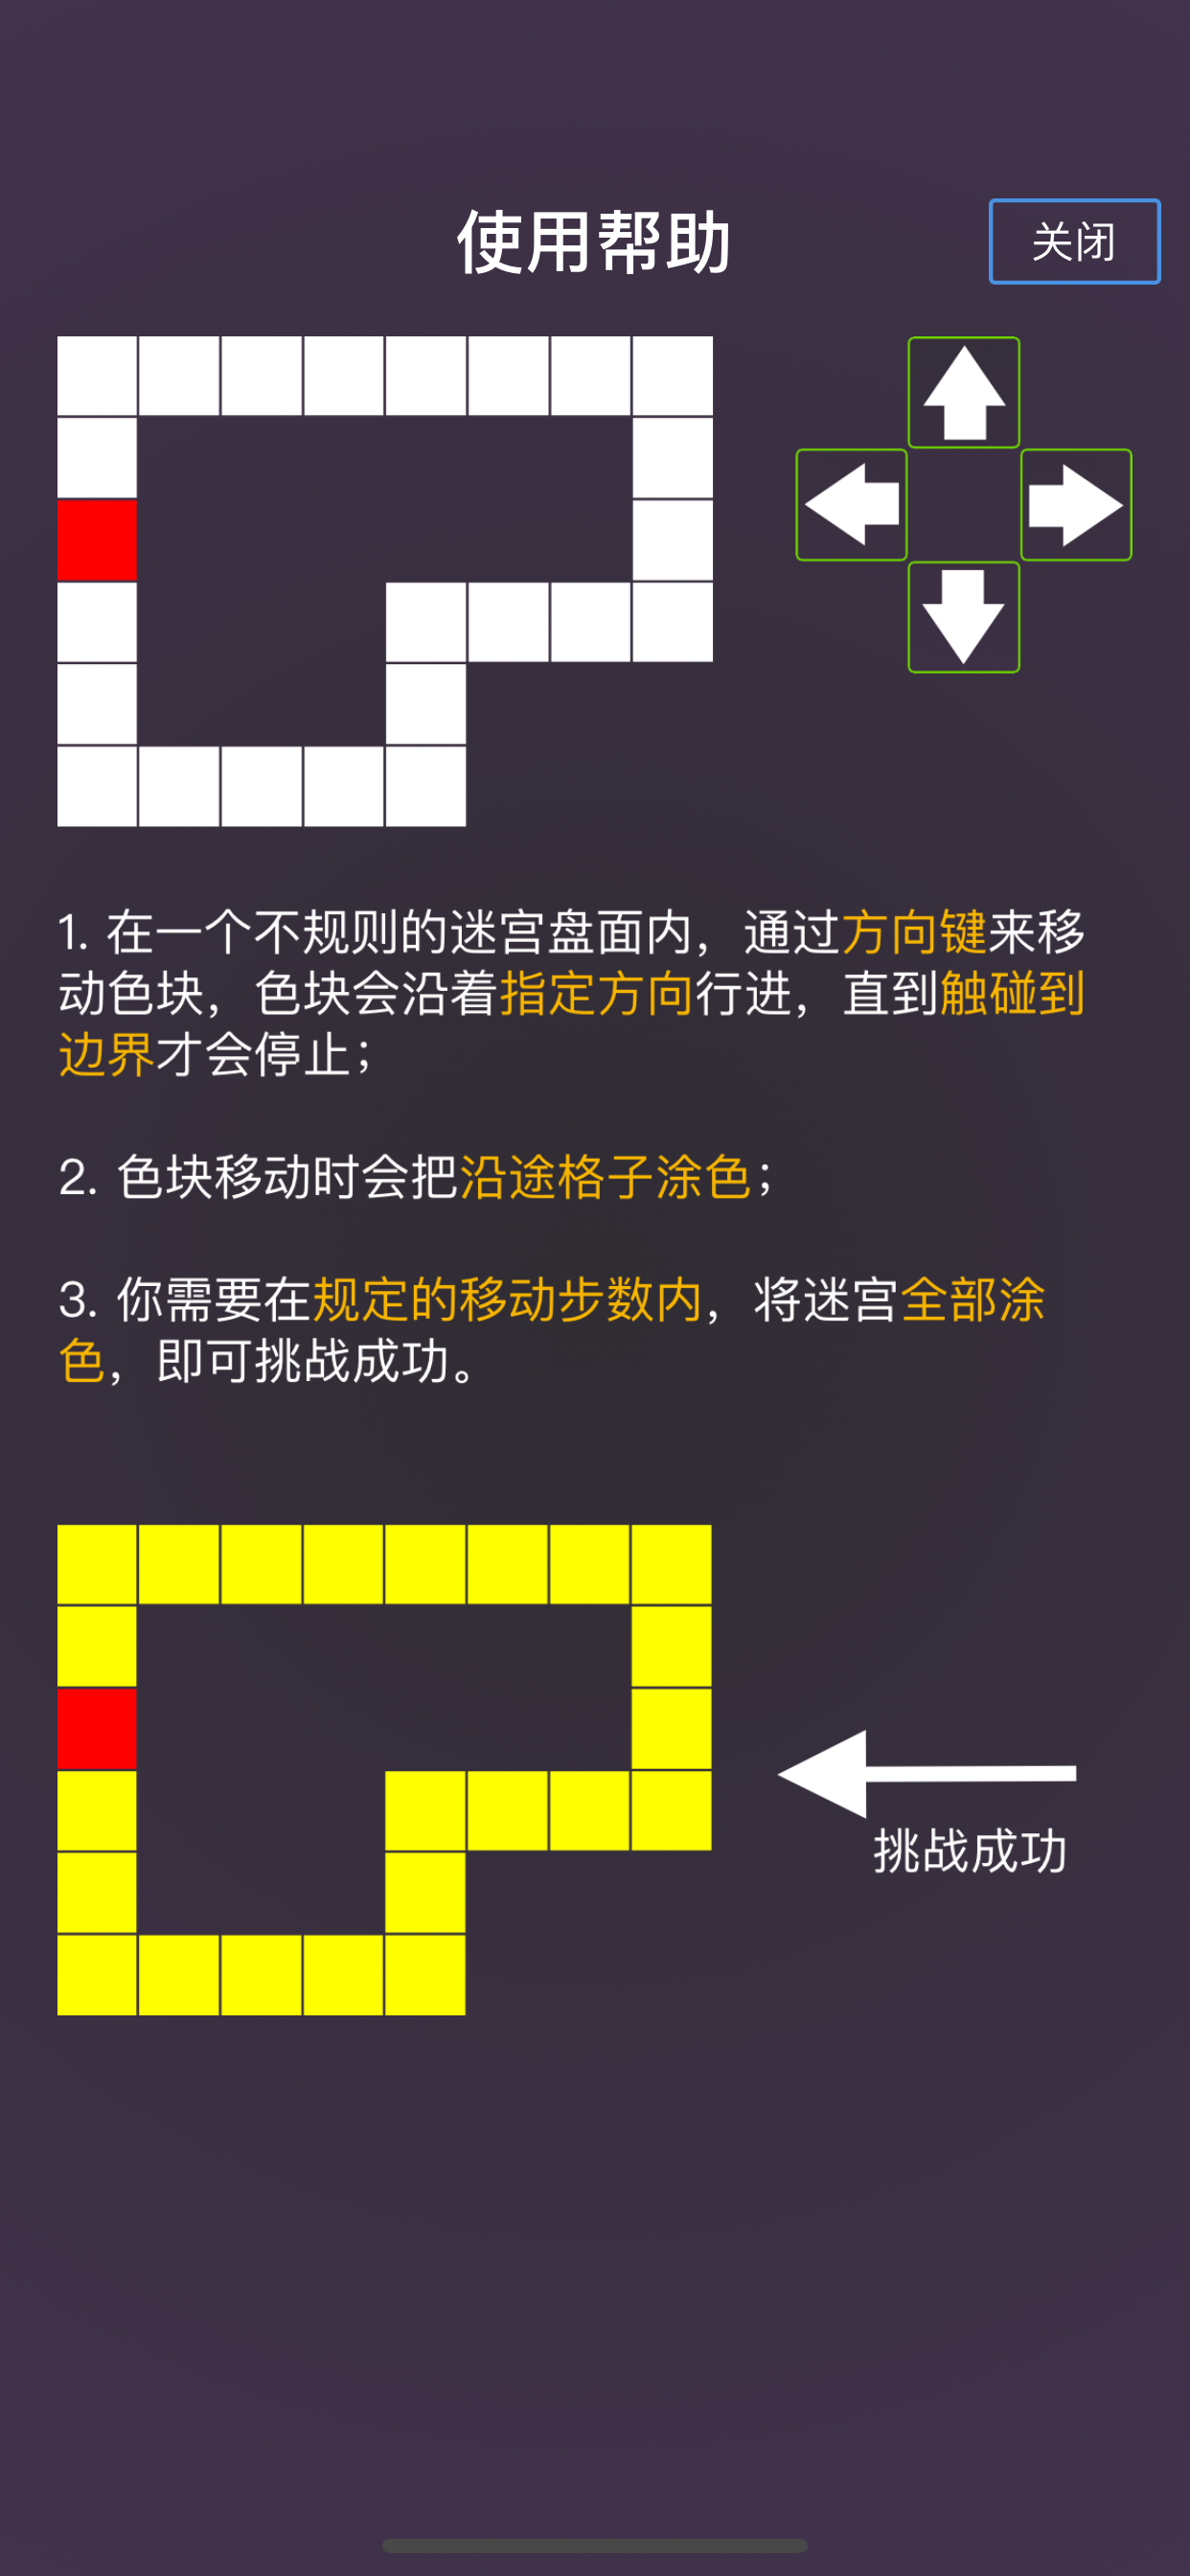 智行营救 screenshot game